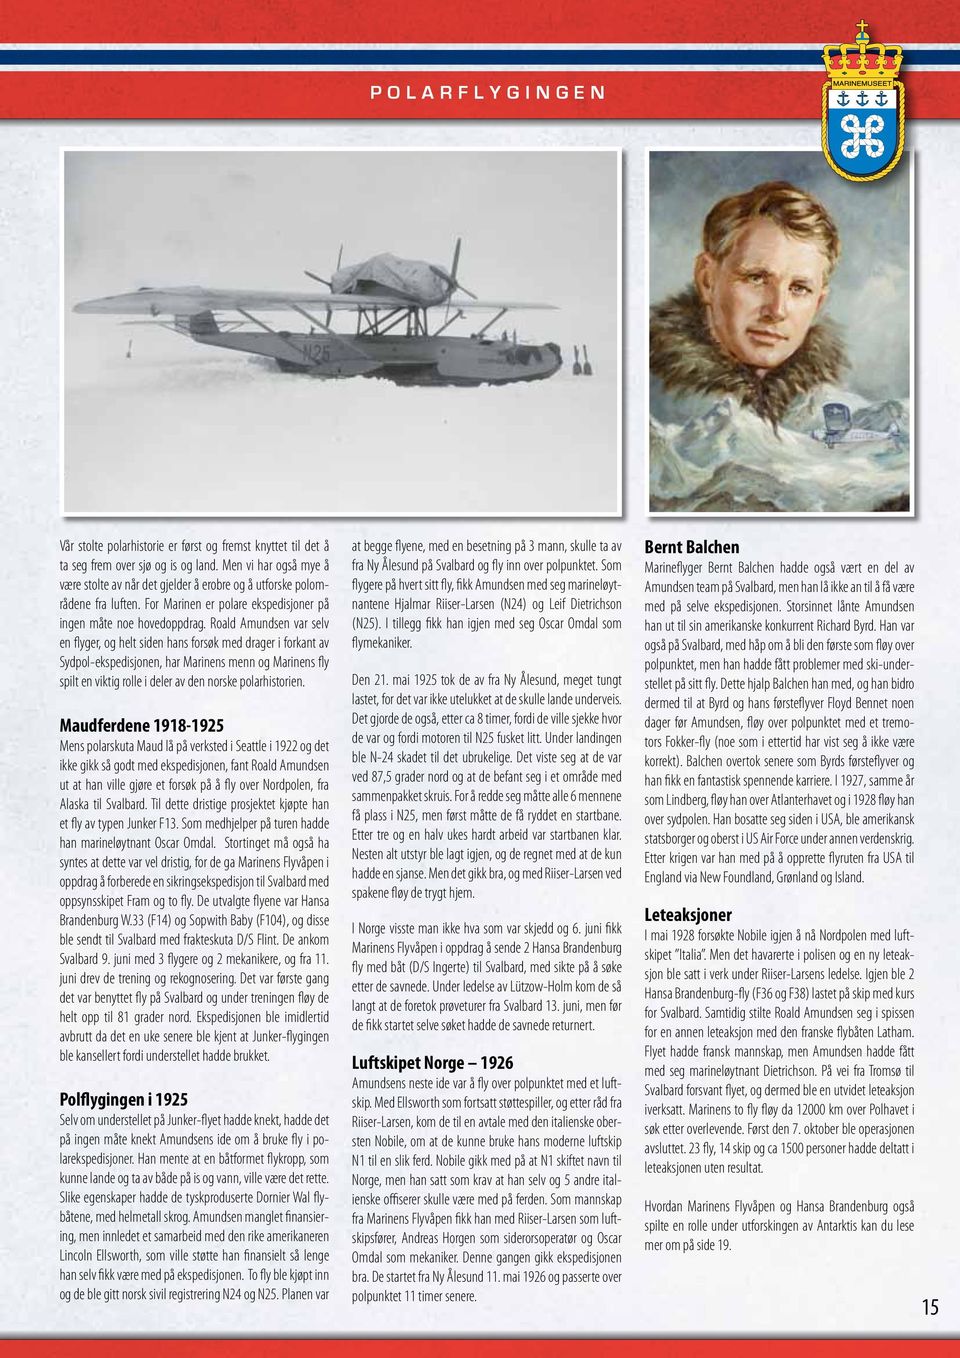 Roald Amundsen var selv en flyger, og helt siden hans forsøk med drager i forkant av Sydpol-ekspedisjonen, har Marinens menn og Marinens fly spilt en viktig rolle i deler av den norske polarhistorien.